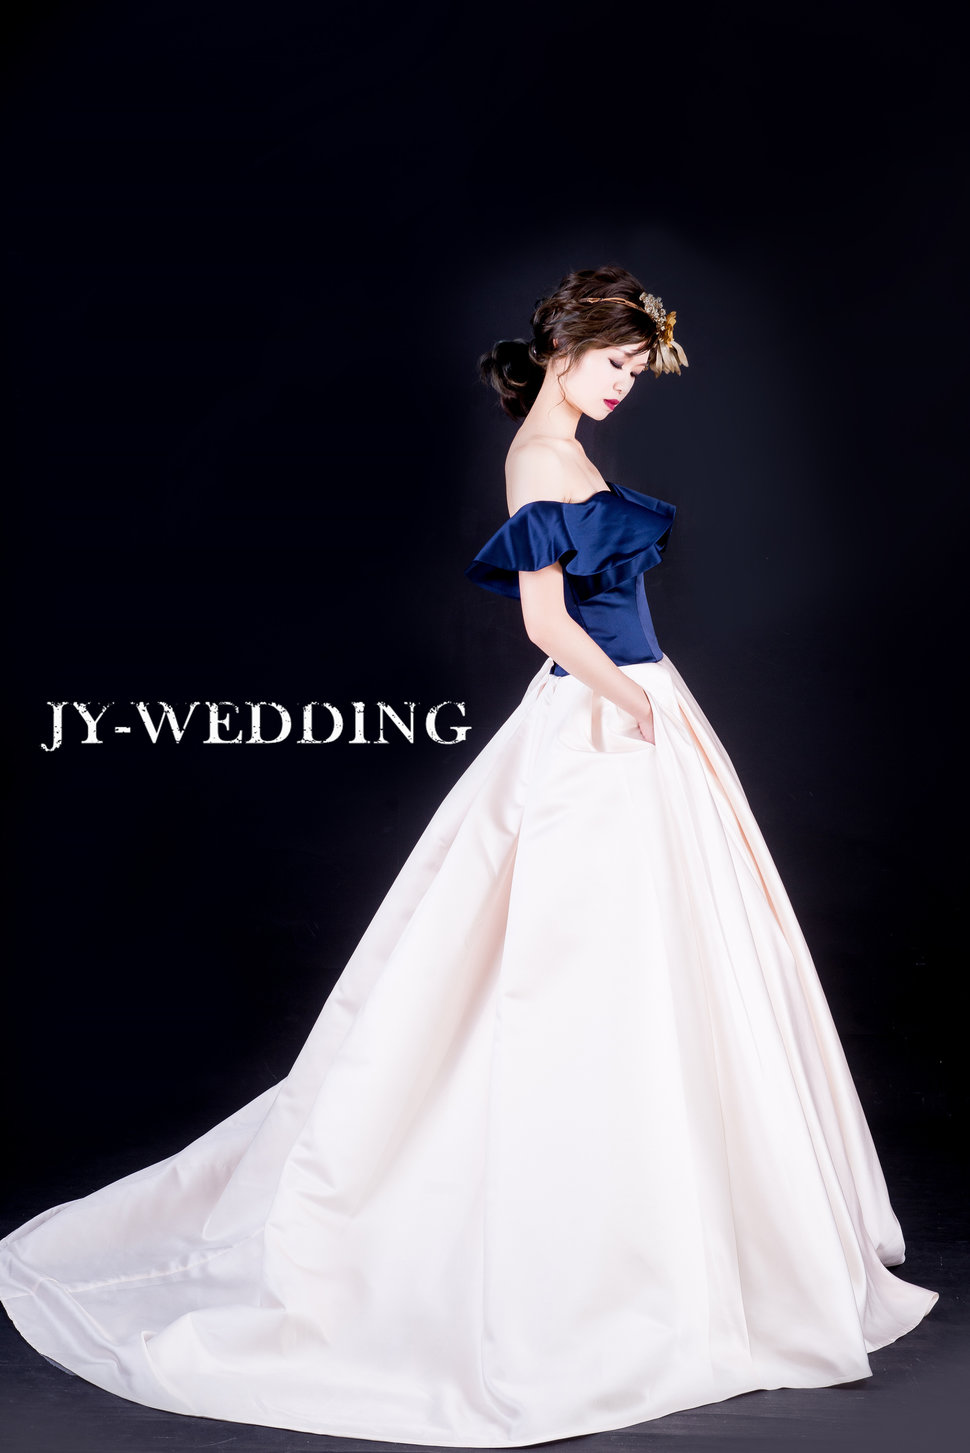 077 - 京宴婚紗JY-WEDDING《結婚吧》